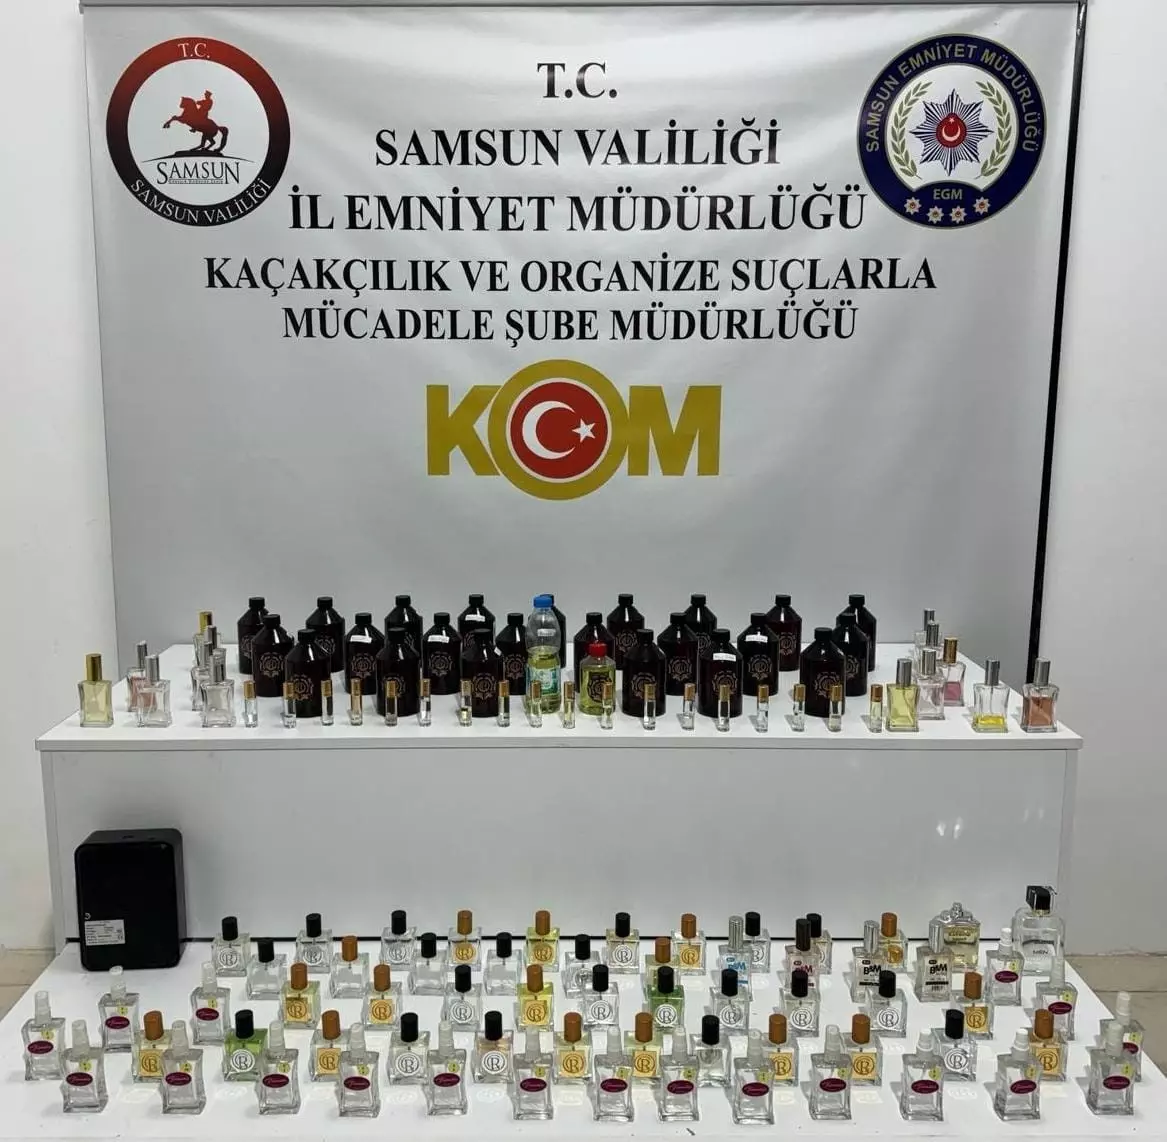 Samsunda Gumruk Kacagi Parfum Ele Gecirildi 20240224 A W148806